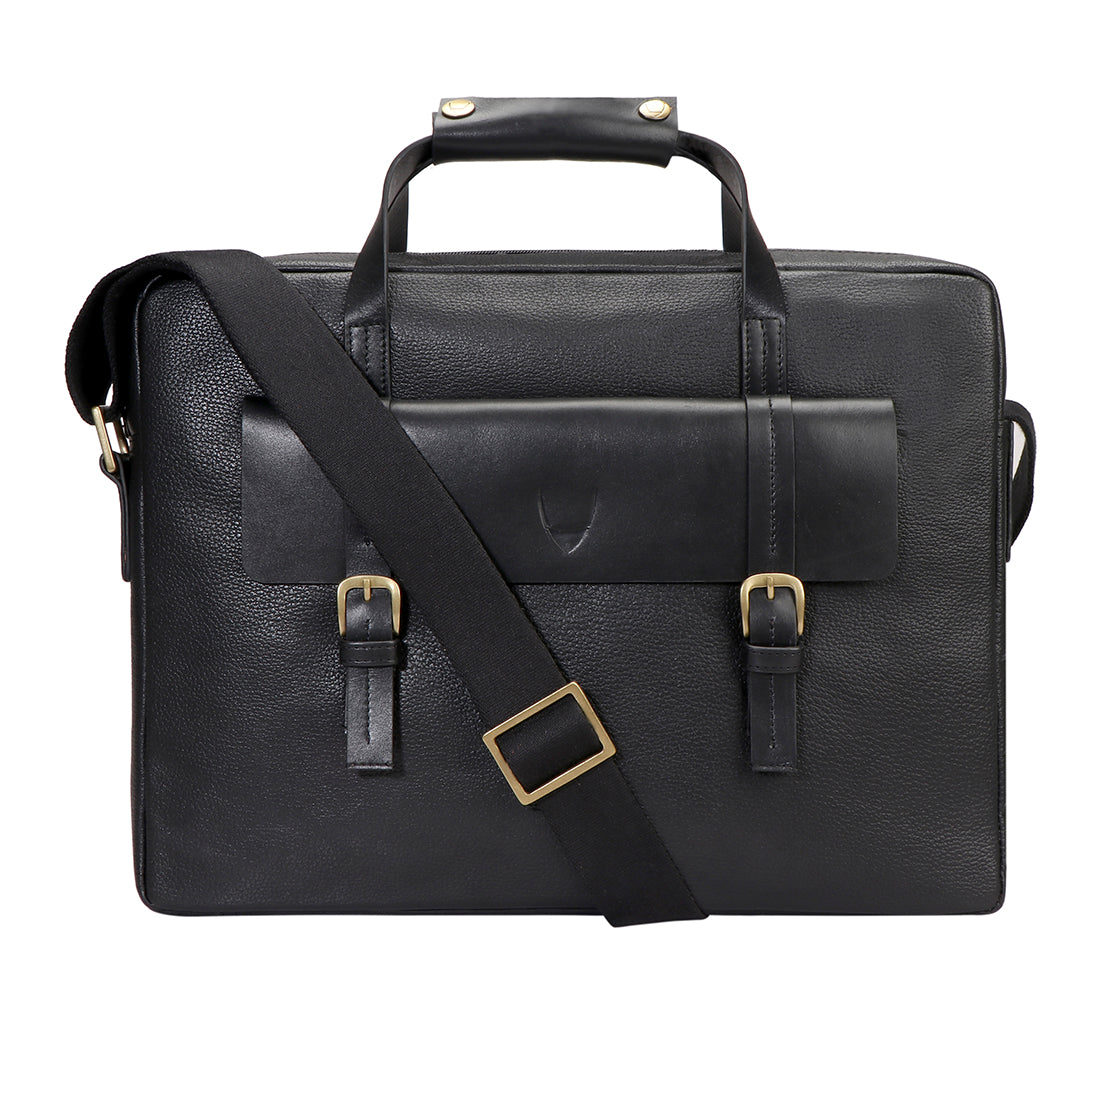 Buy Black Ronaldo 01 Sb Briefcase Online - Hidesign